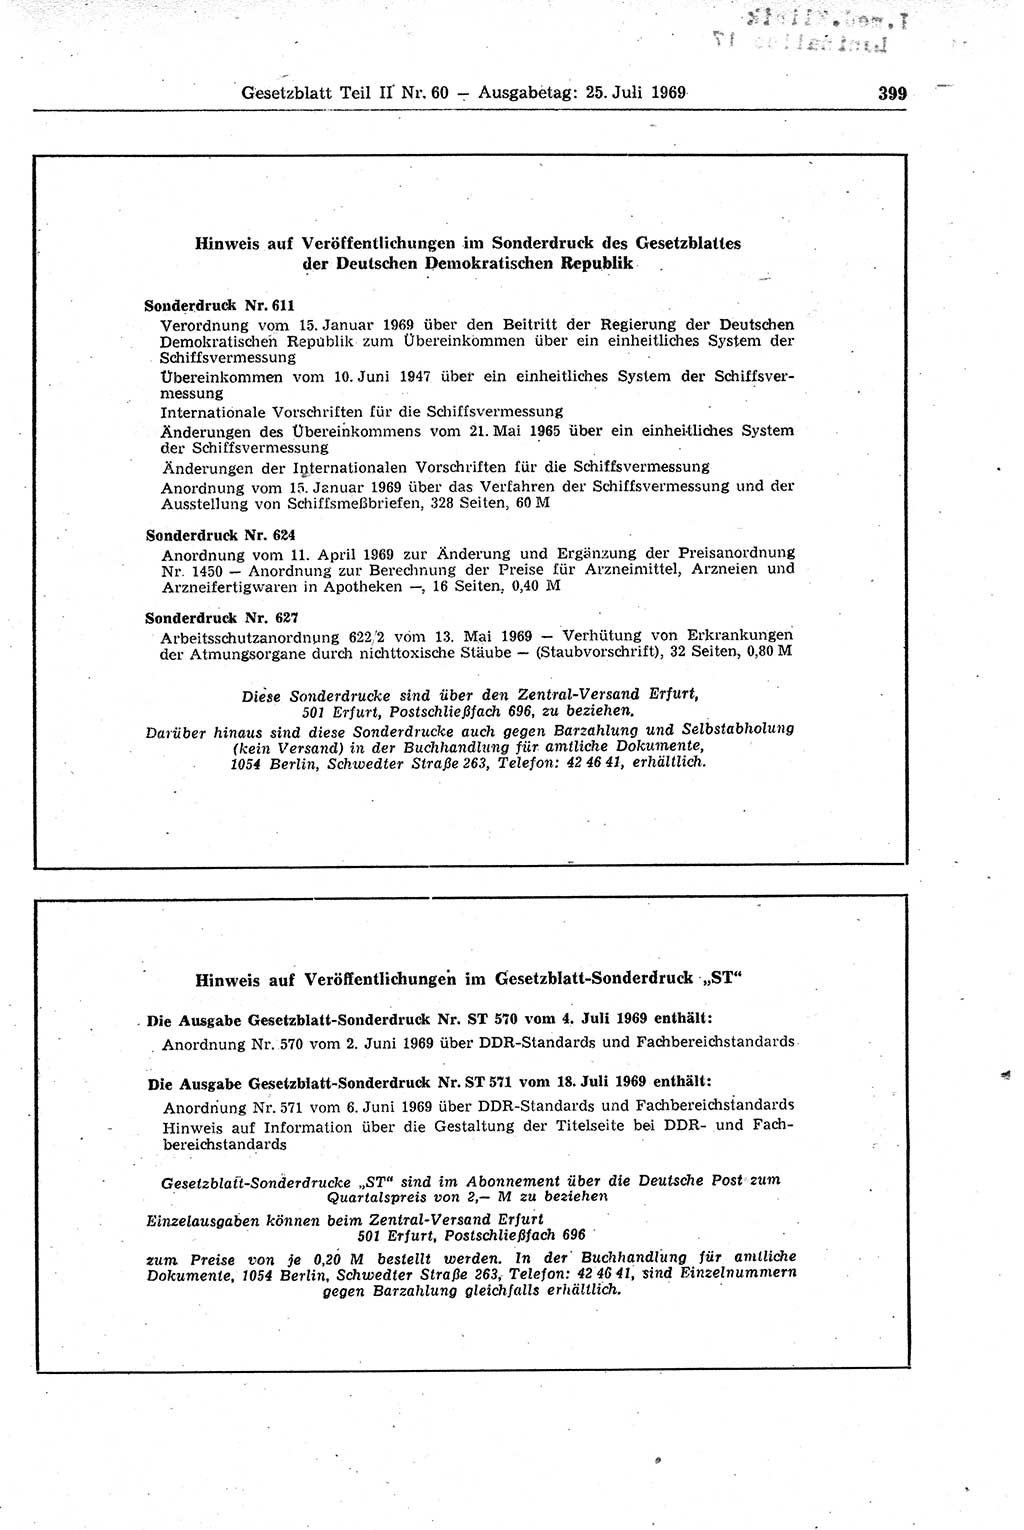 Gesetzblatt (GBl.) der Deutschen Demokratischen Republik (DDR) Teil ⅠⅠ 1969, Seite 399 (GBl. DDR ⅠⅠ 1969, S. 399)